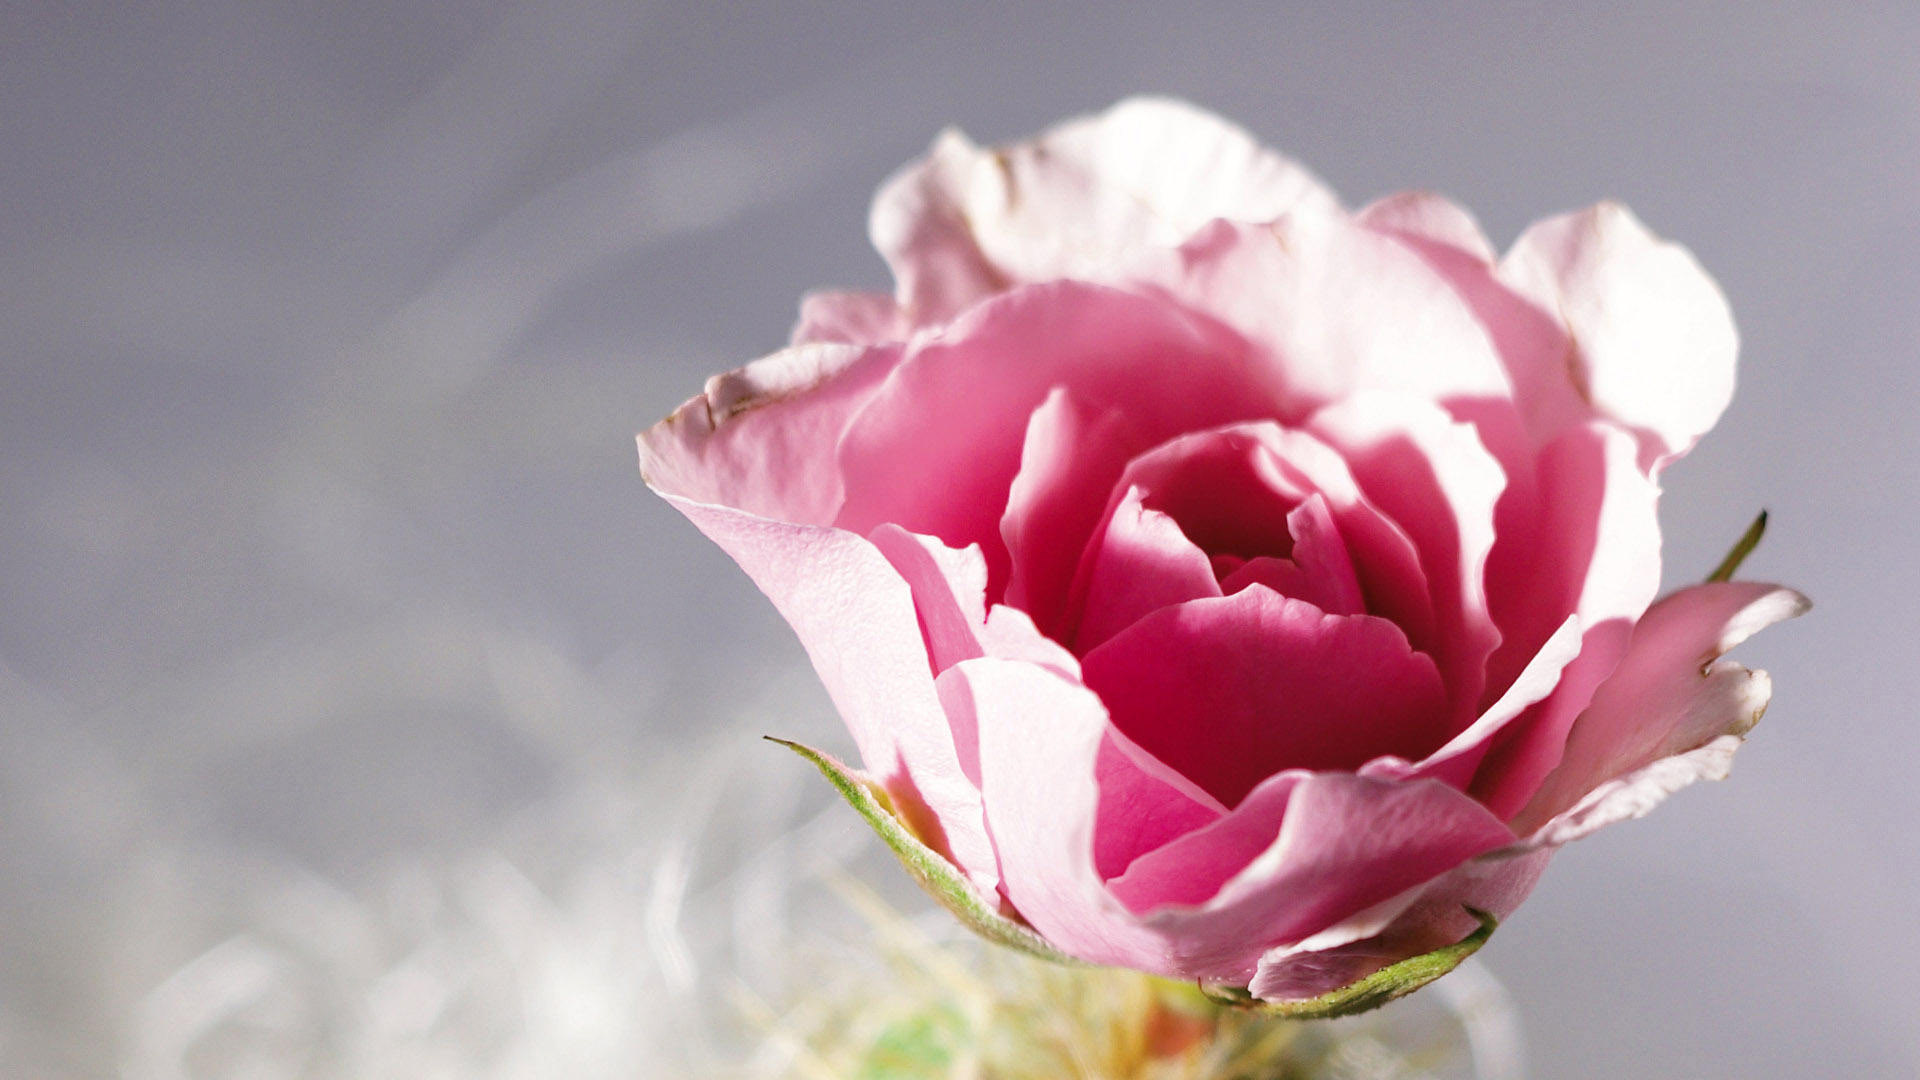 漂亮玫瑰花的图片  高清艳丽玫瑰图片大全(2)